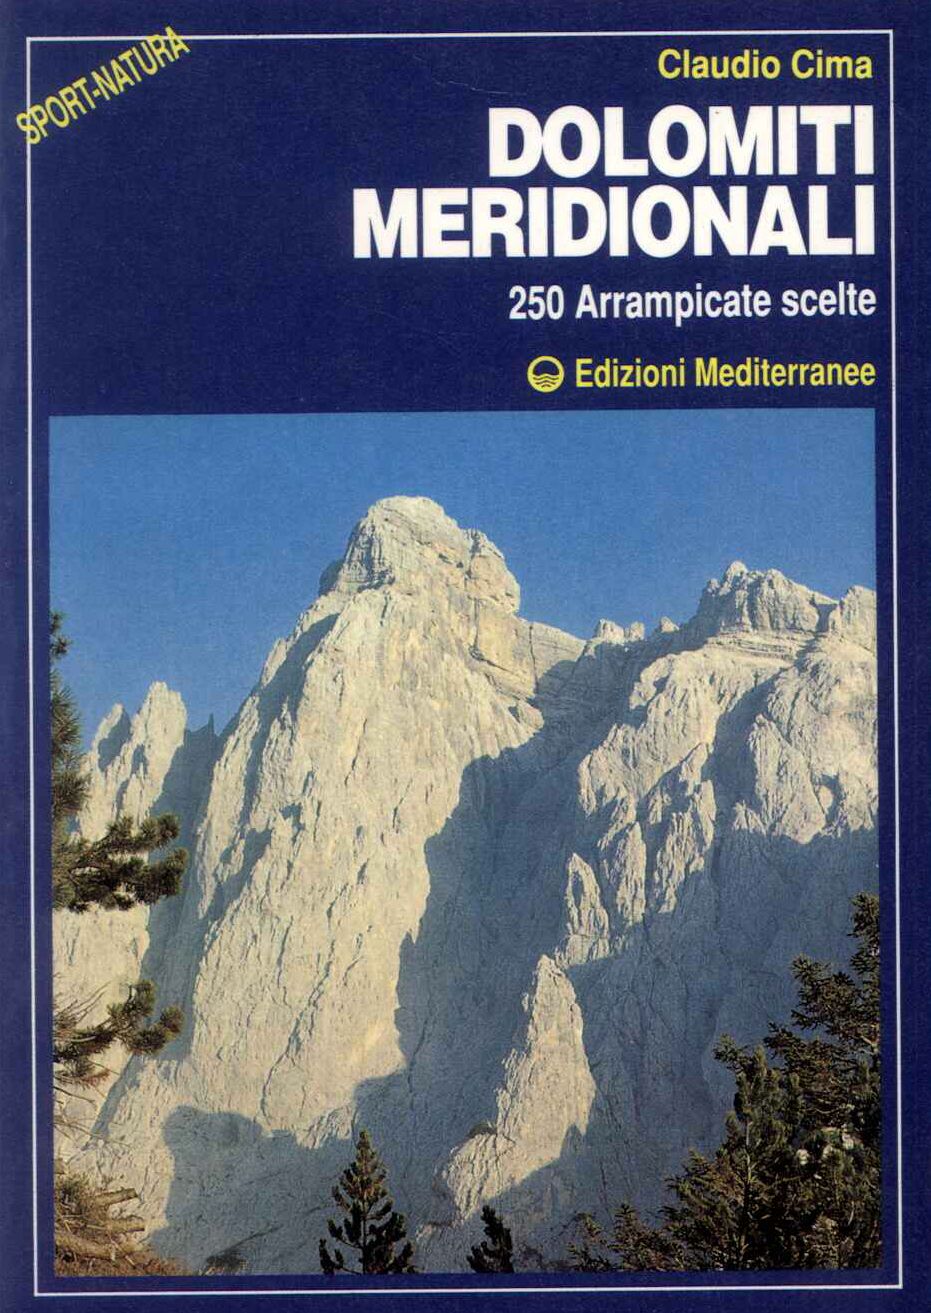 Dolomiti Meridionali 250 arrampicate scelte